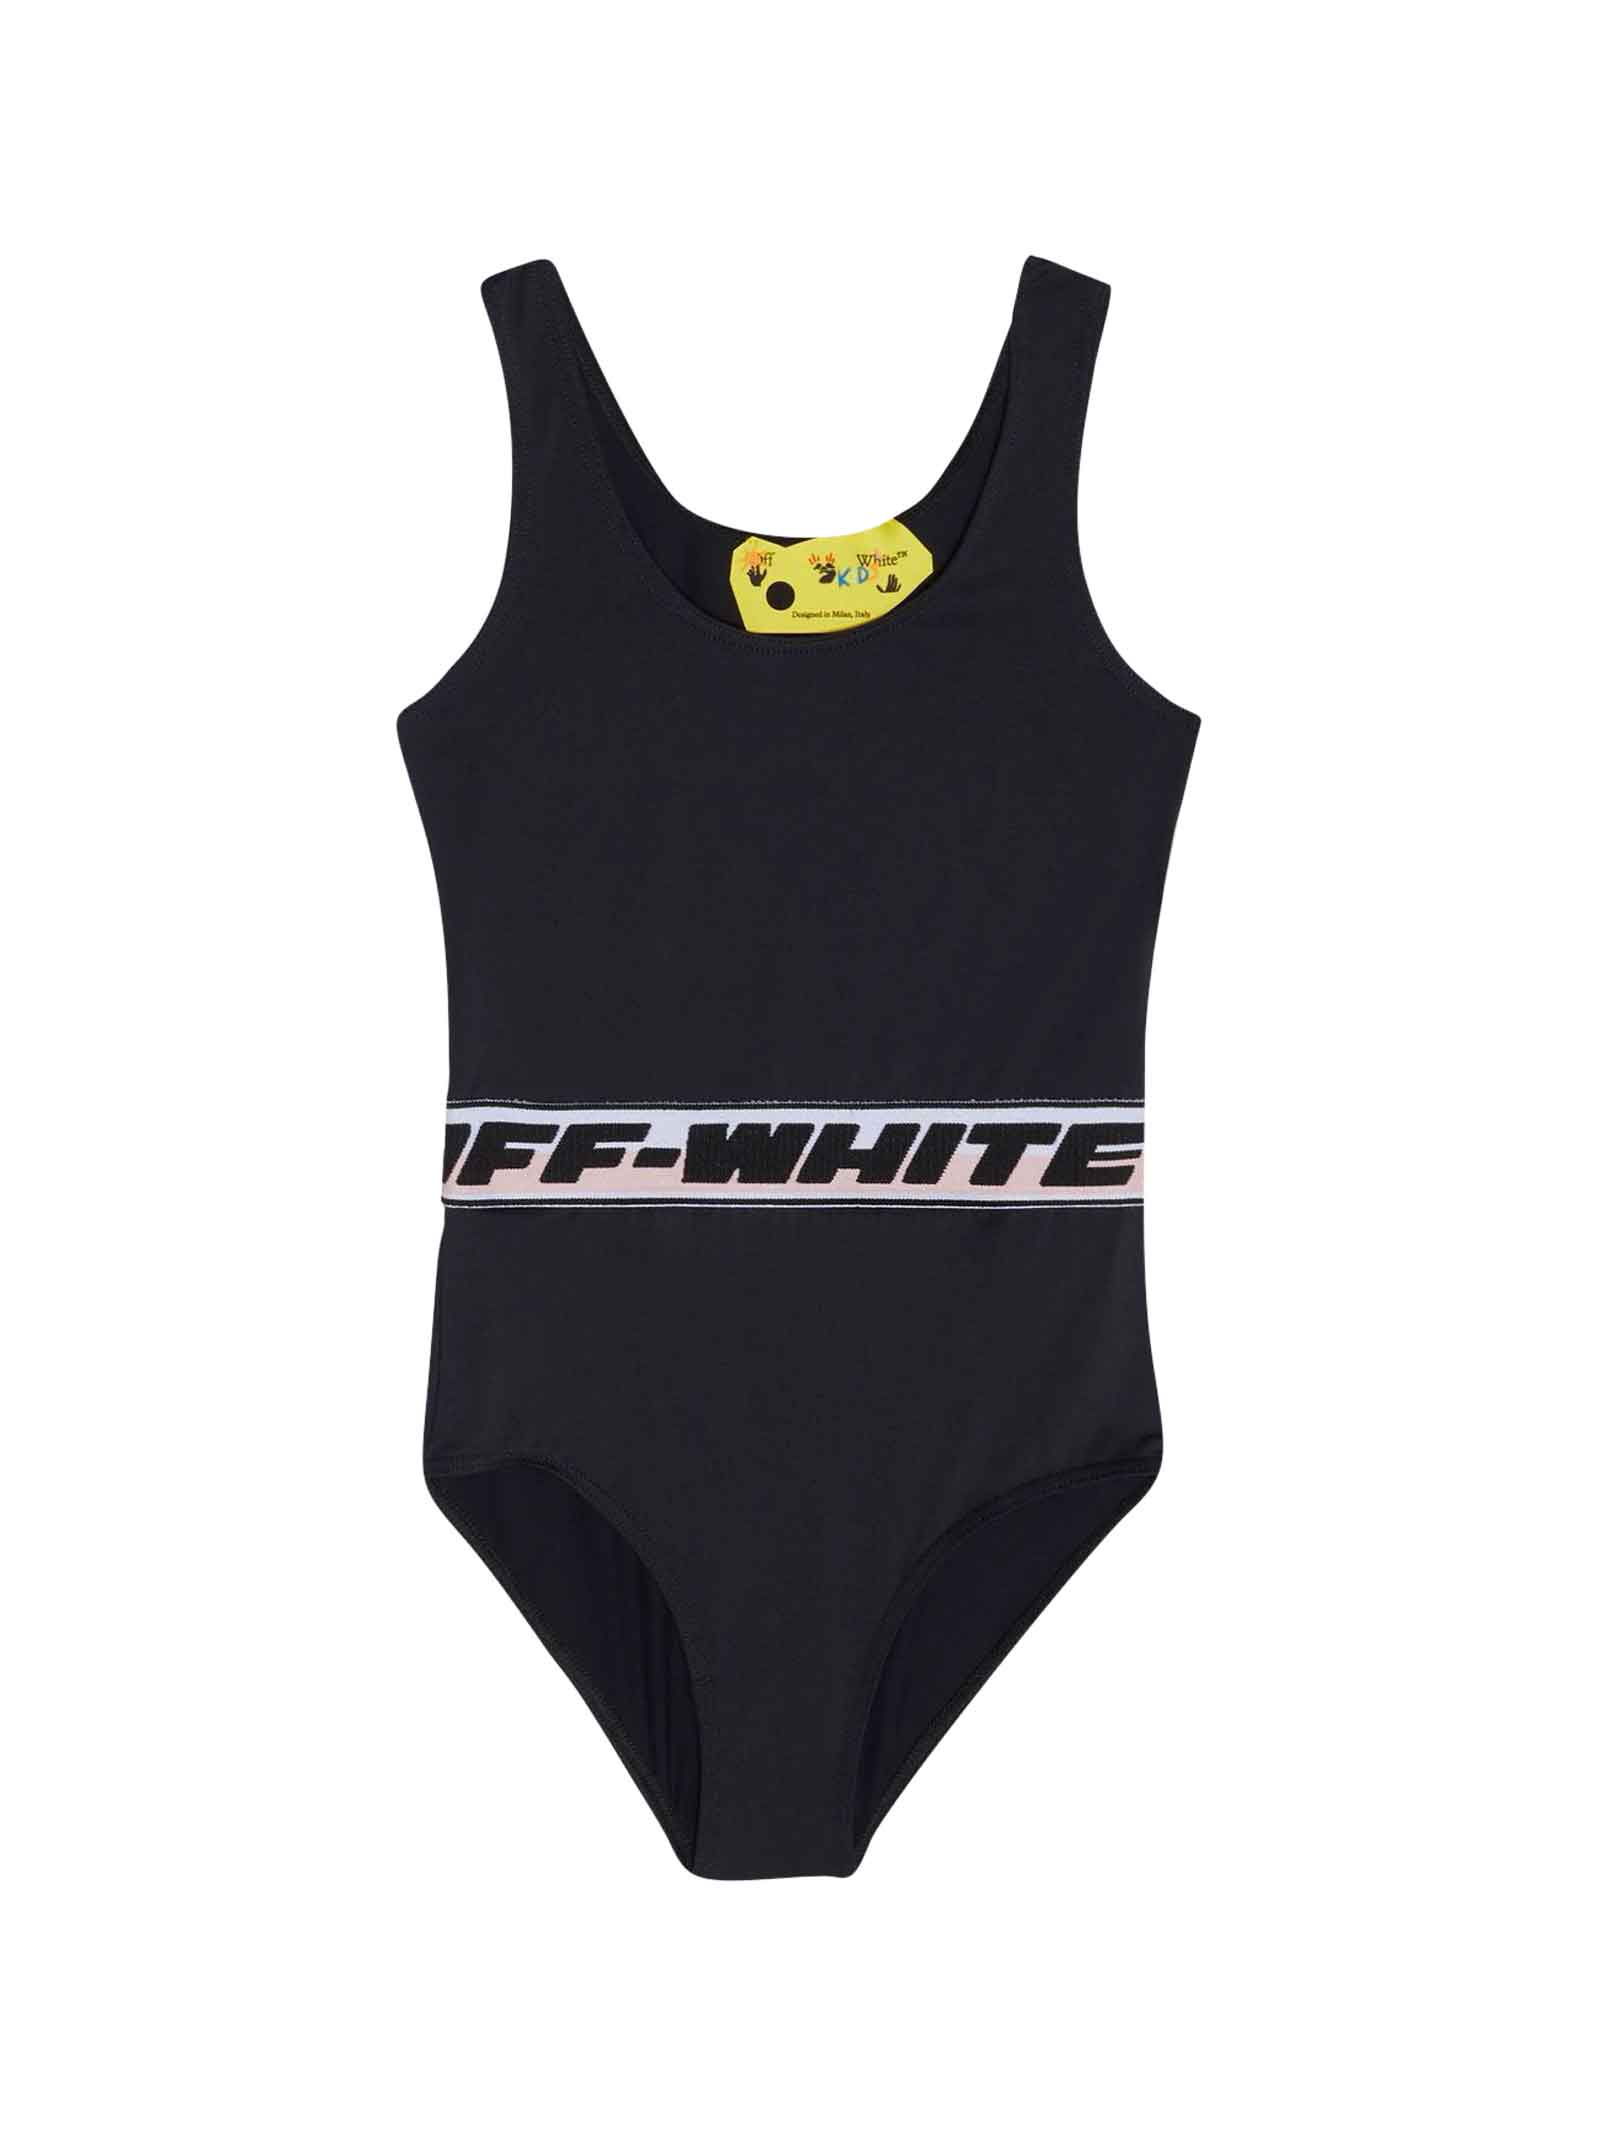 Off-White Black Swimsuit Girl